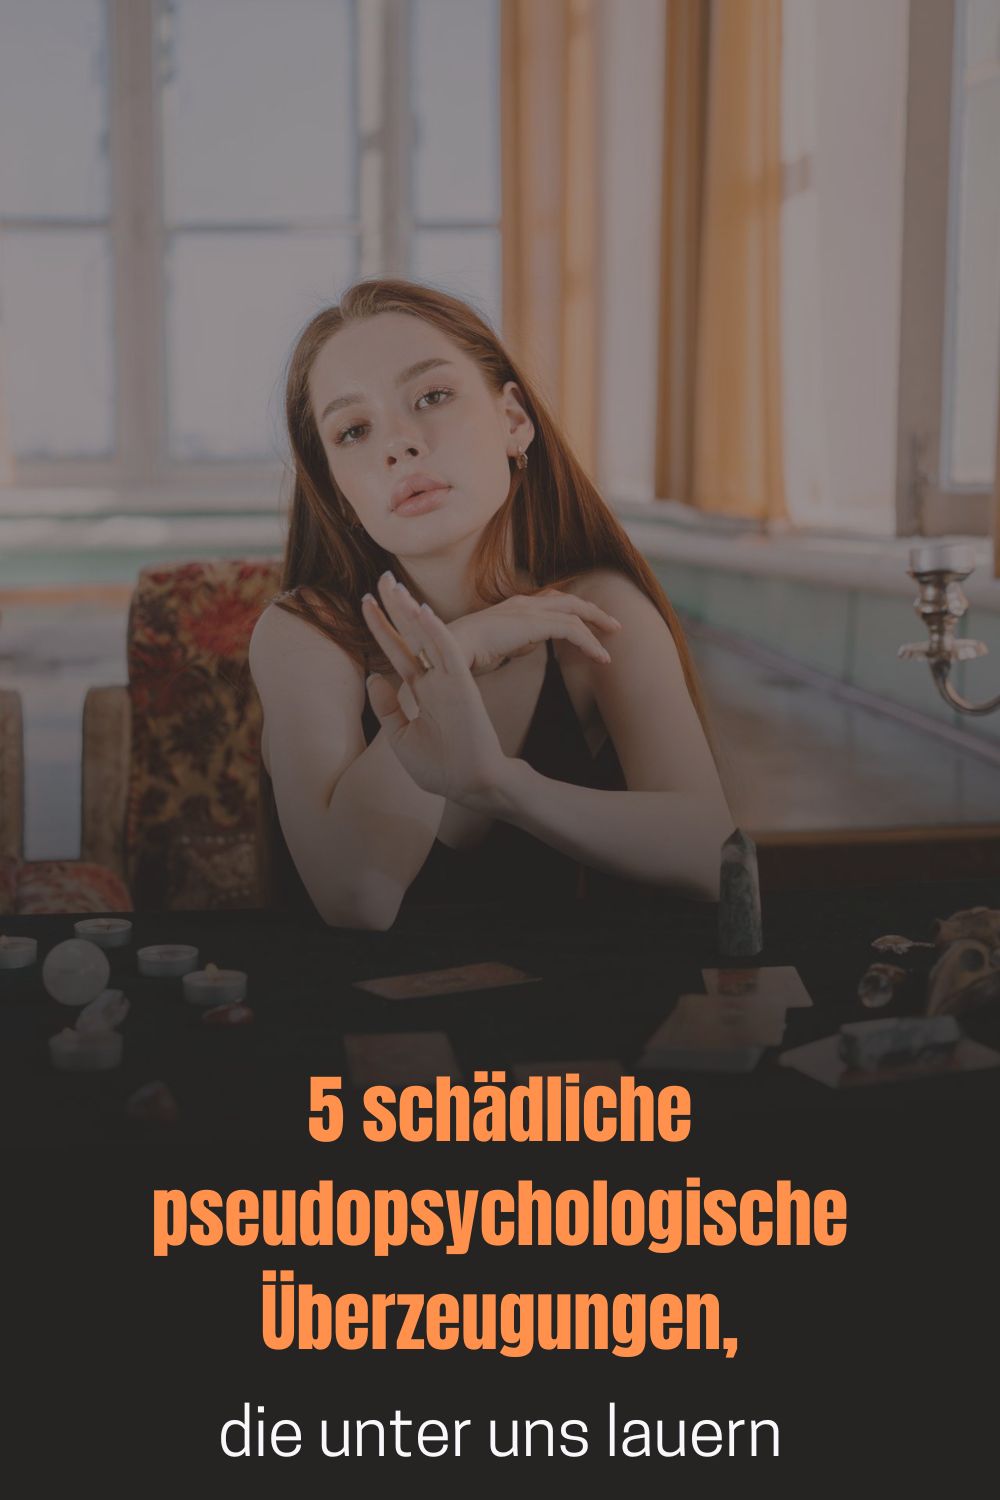 Was-ist-Pseudo-Psychologie-5-schaedliche-pseudopsychologische-Ueberzeugungen-die-unter-uns-lauern